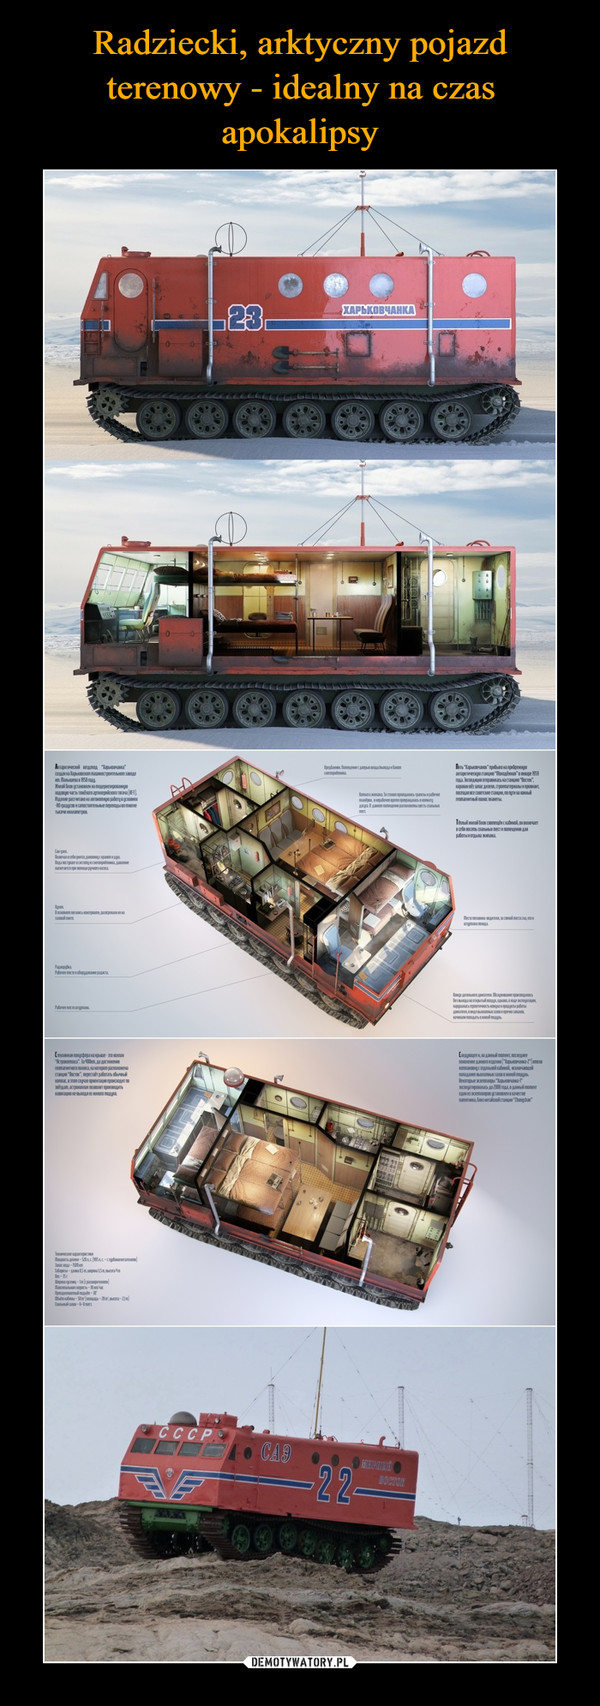 Radziecki, arktyczny pojazd terenowy - idealny na czas apokalipsy